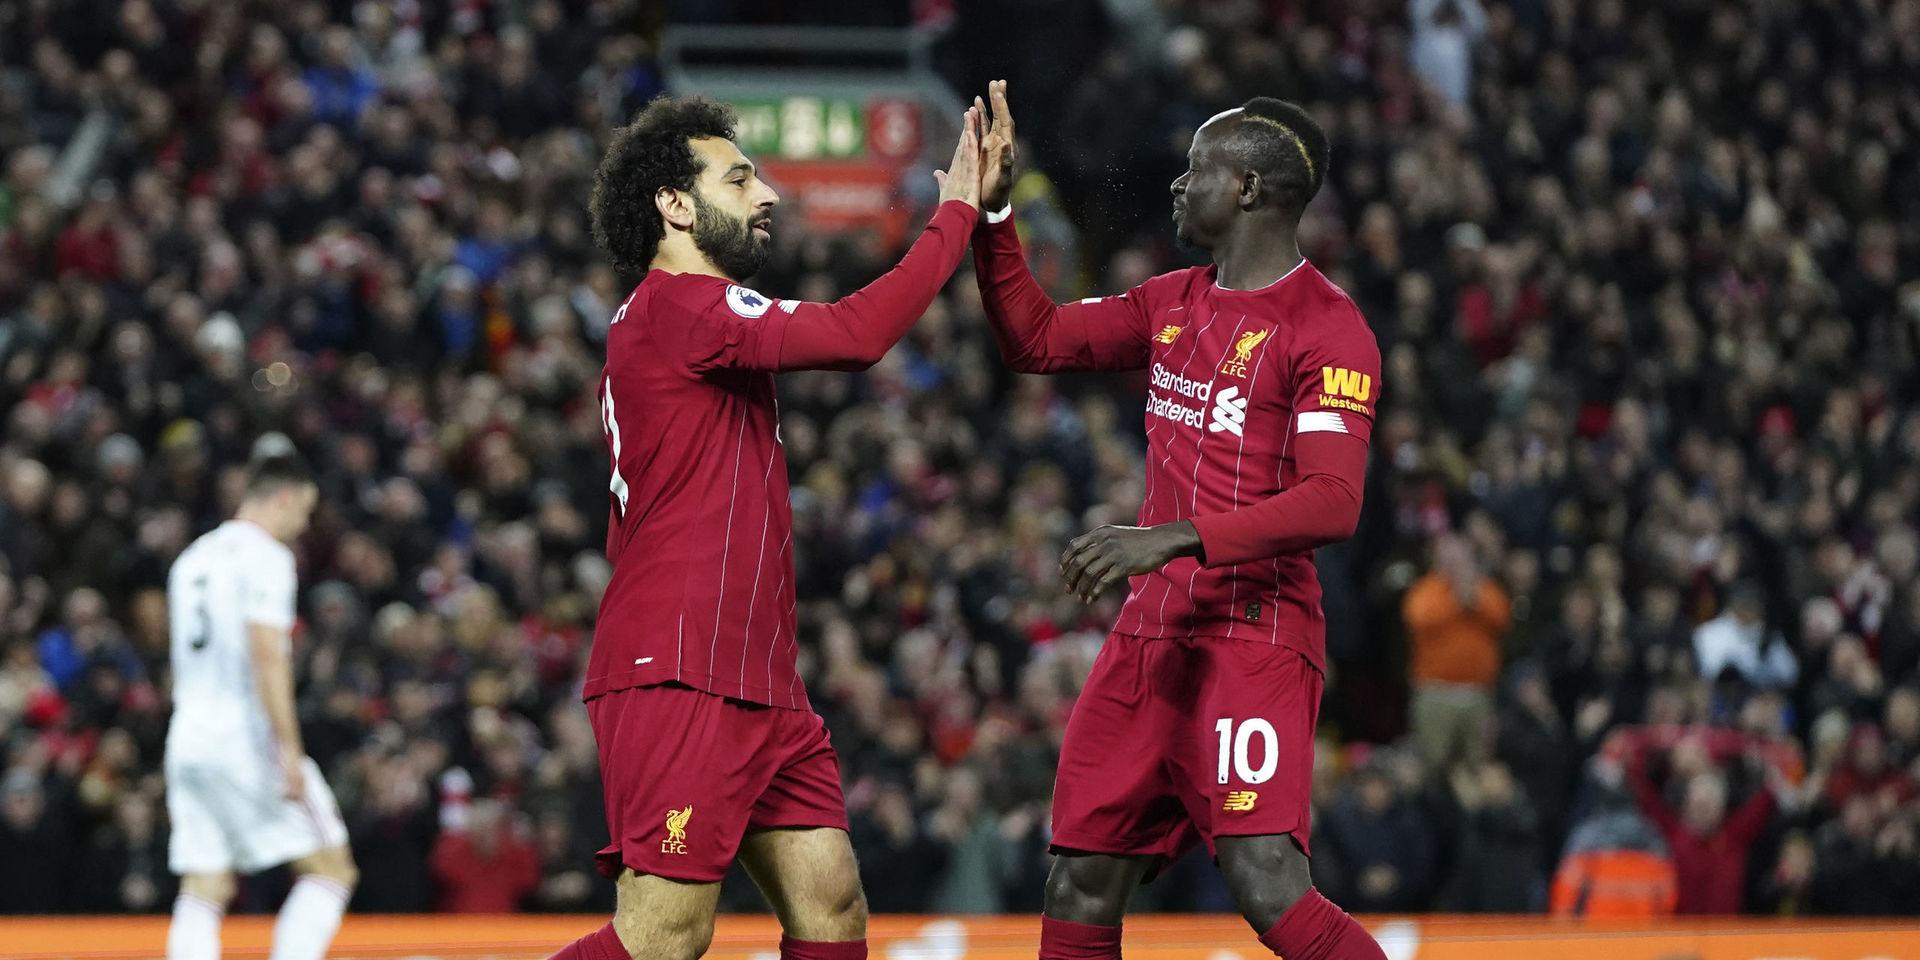 Egyptiern Mohamed Salah och senegalesen Sadio Mané är två av Liverpools största stjärnor. Men efter brexit kan det bli färre utländska stjärnor i Premier league. Arkivbild.